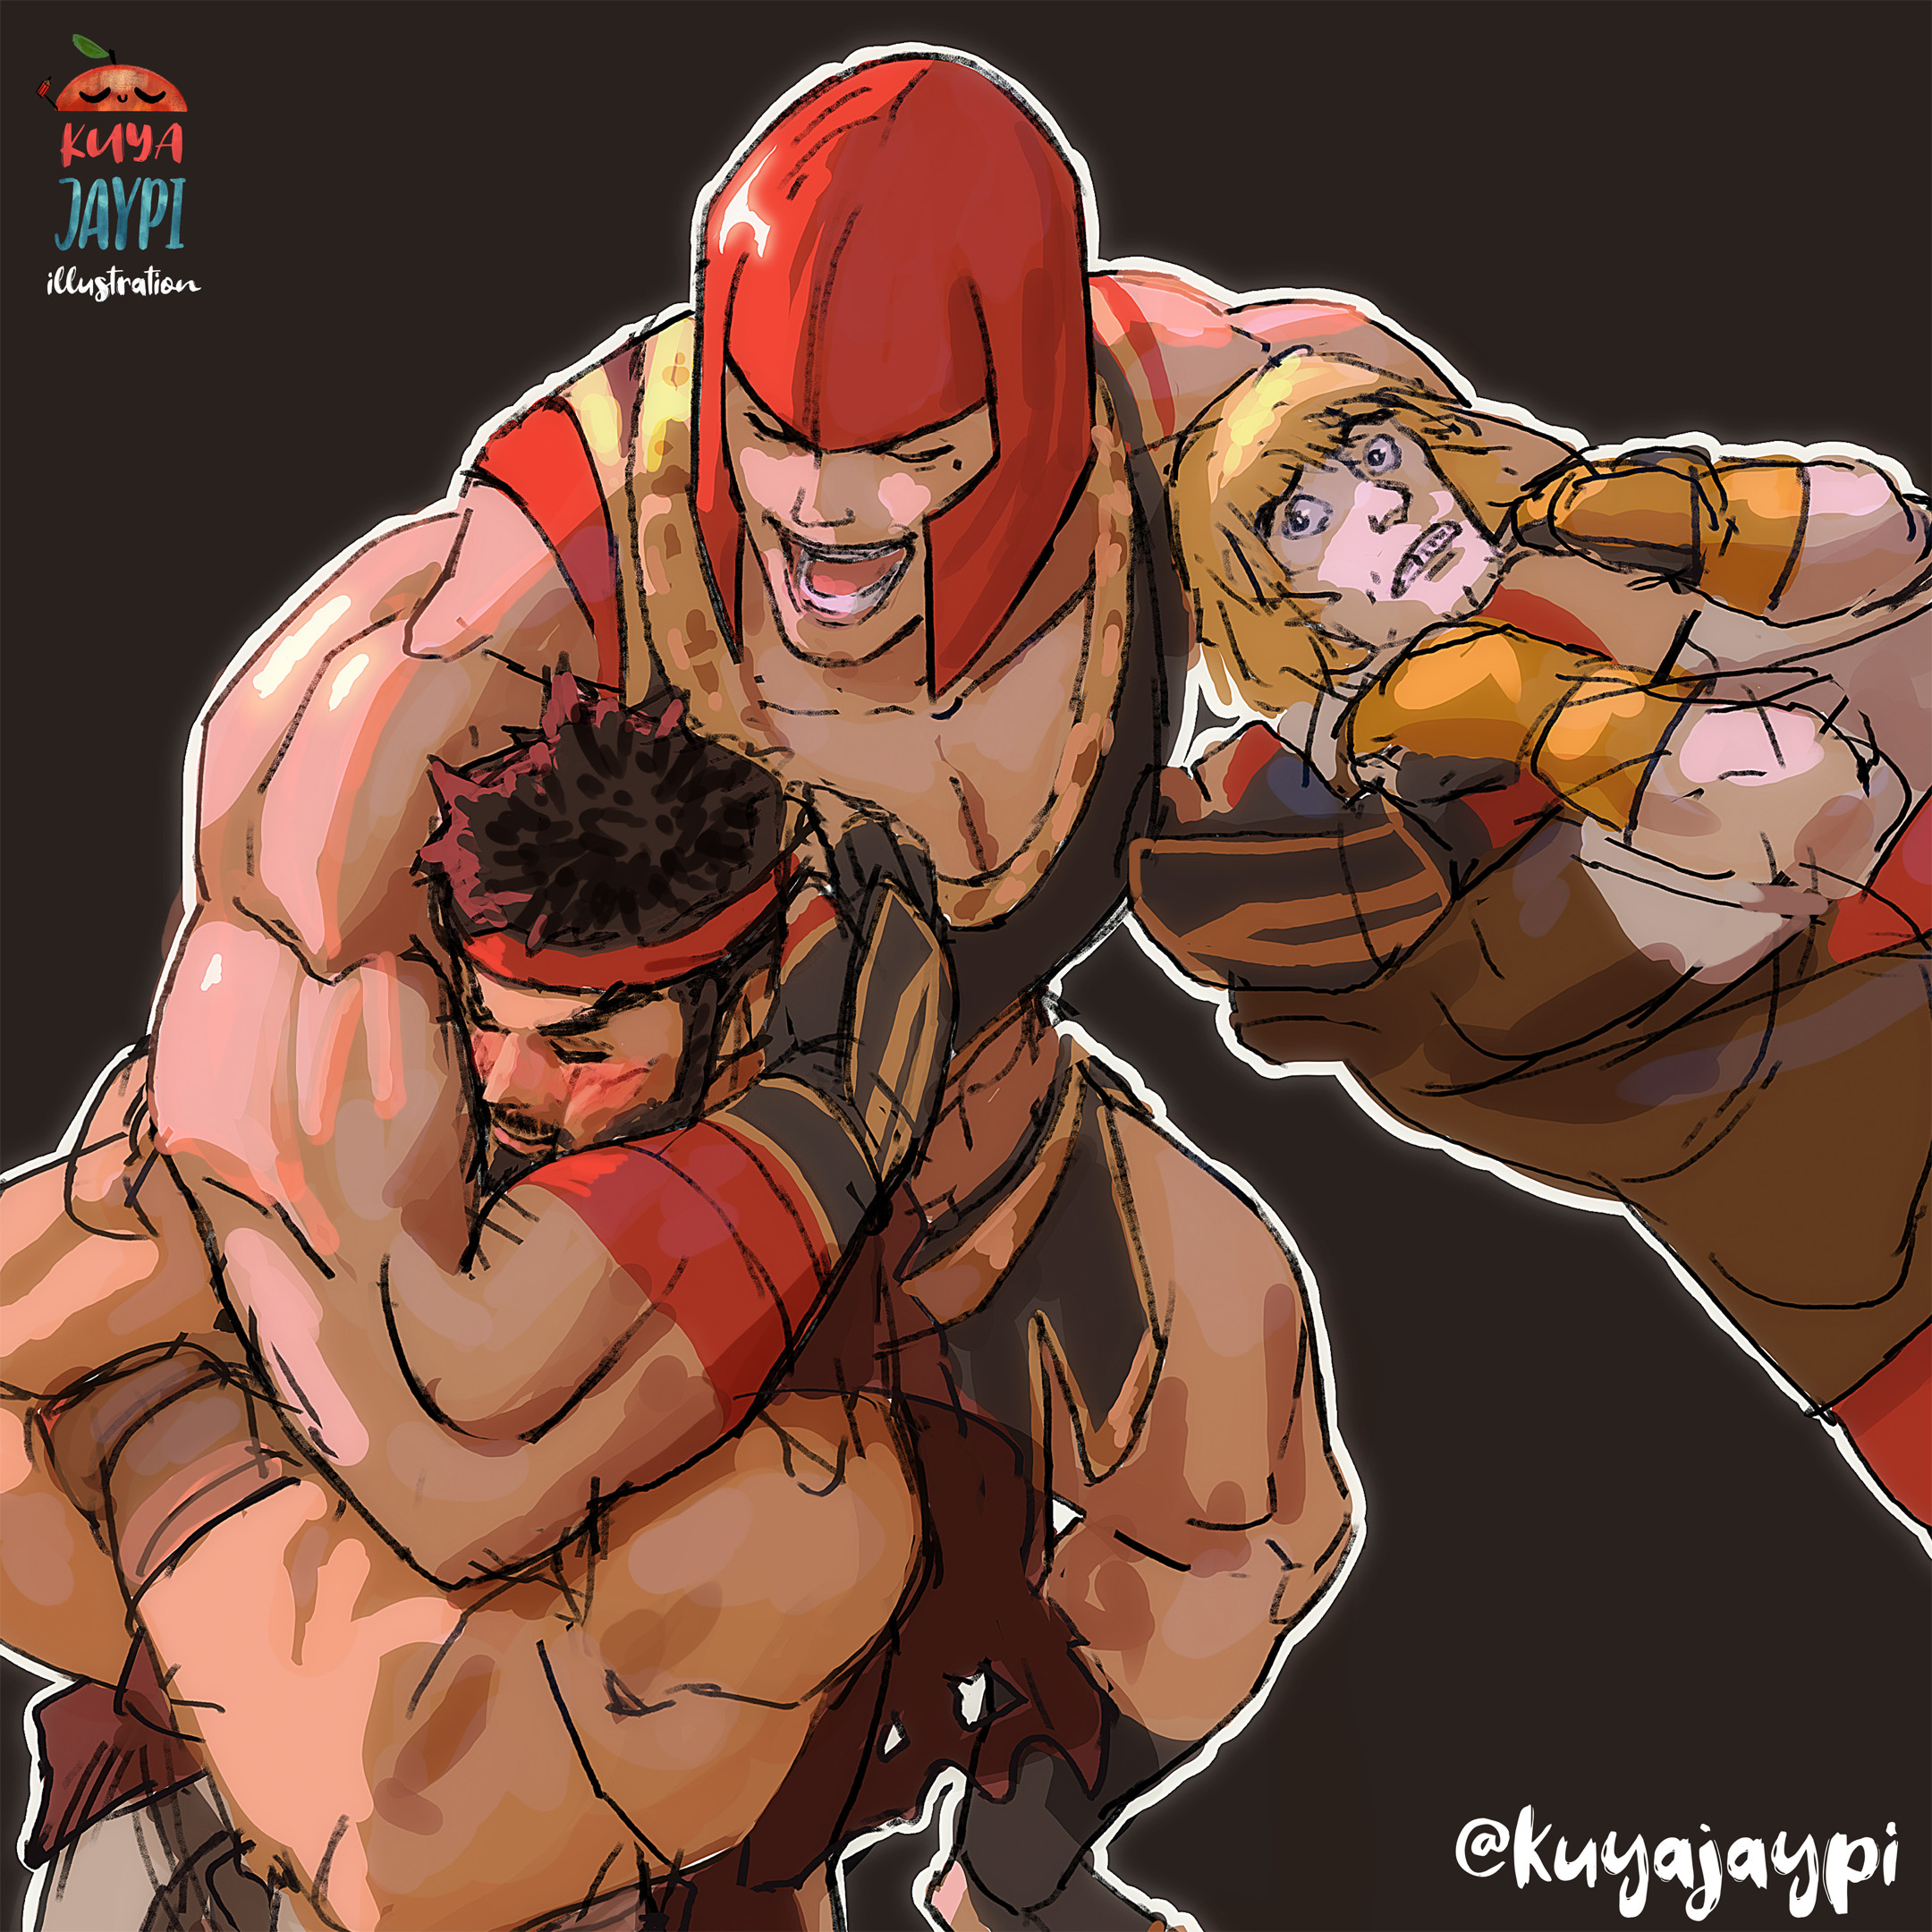 ArtStation - Ryu - Street Fighter